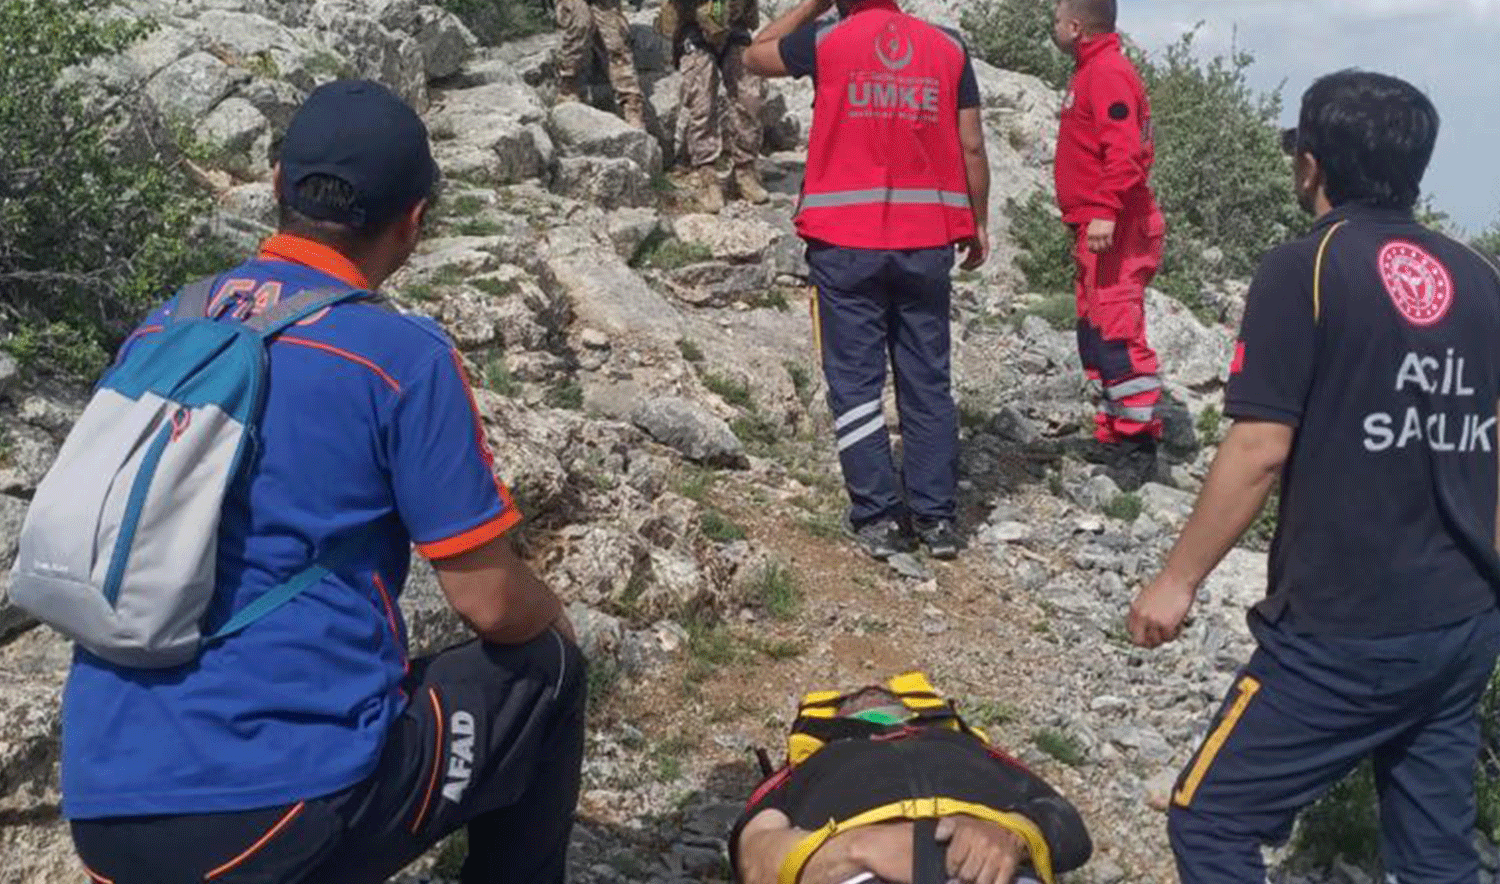 Dağlık arazide düşerek yaralanan vatandaş askeri helikopterle kurtarıldı